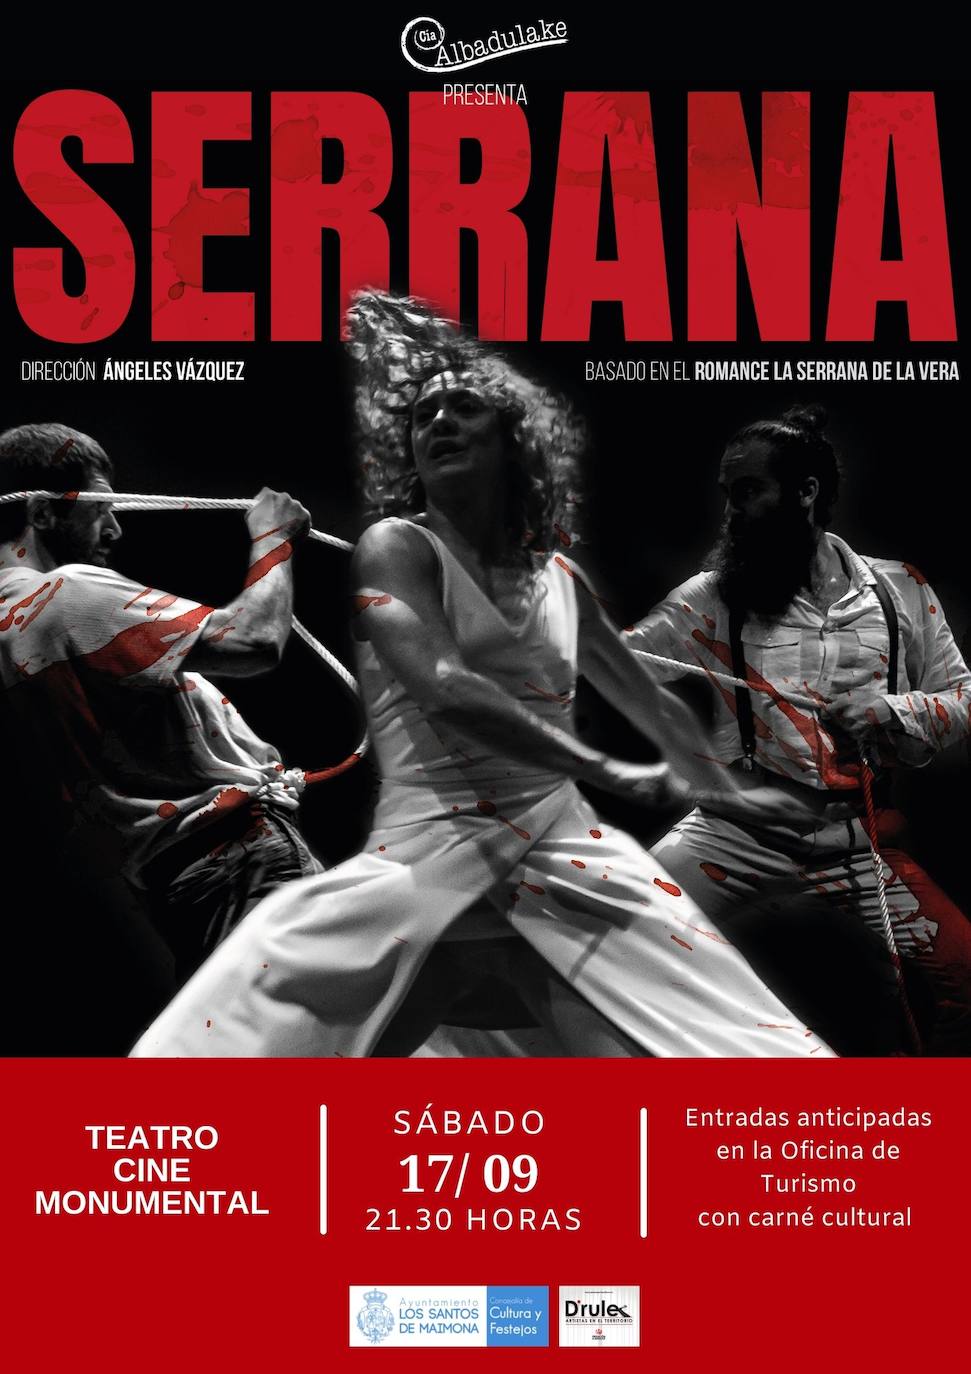 La programación del Monumental continúa este sábado con un espectáculo innovador, 'Serrana'